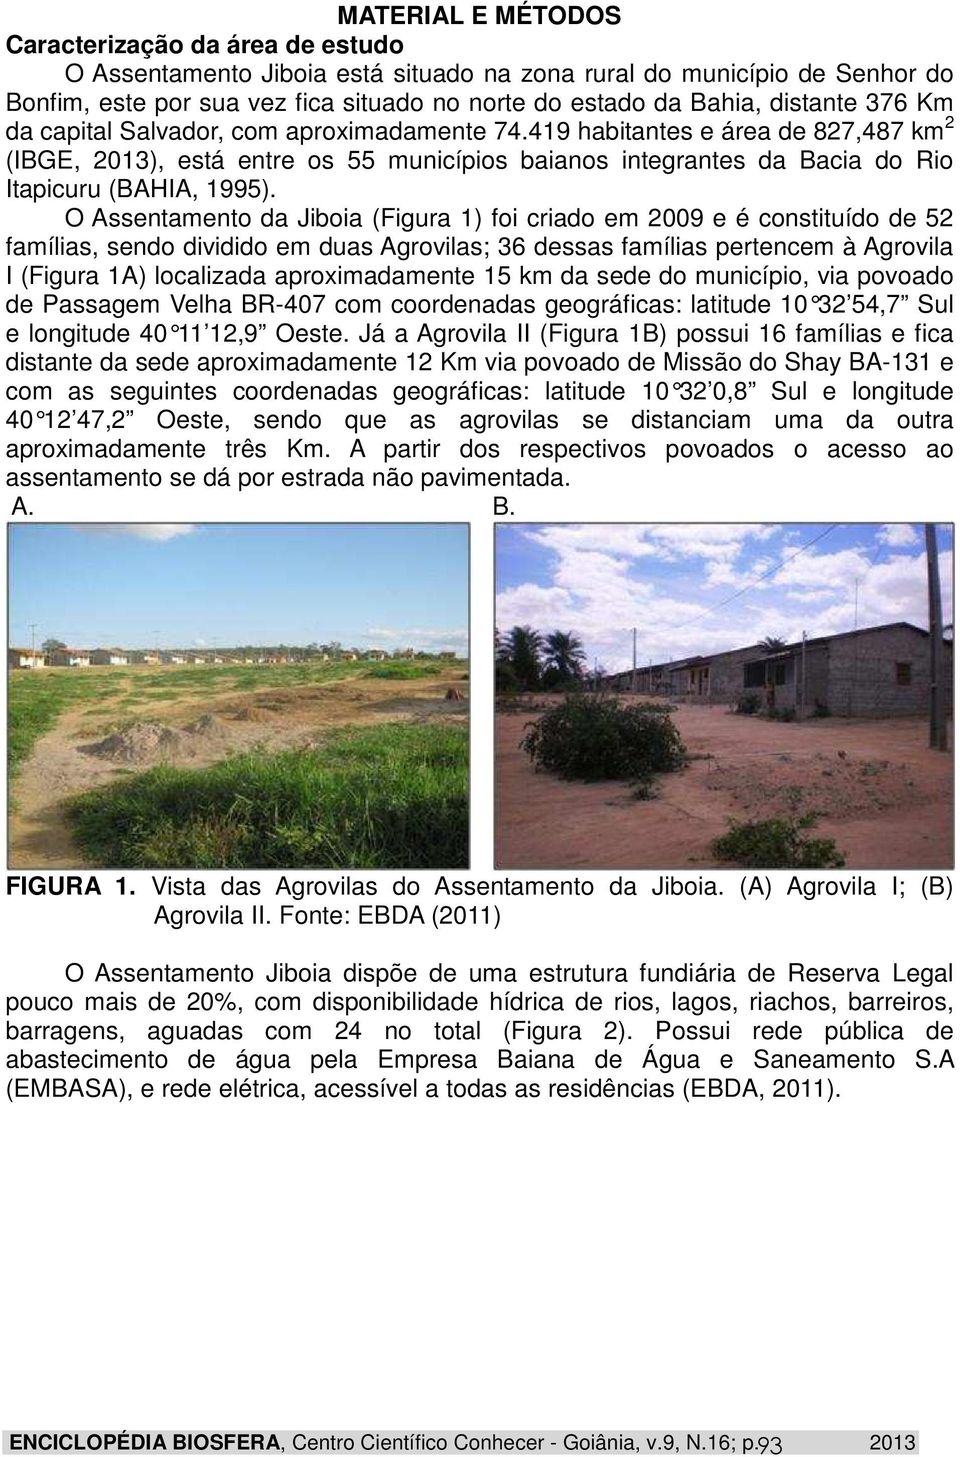 O Assentamento da Jiboia (Figura 1) foi criado em 2009 e é constituído de 52 famílias, sendo dividido em duas Agrovilas; 36 dessas famílias pertencem à Agrovila I (Figura 1A) localizada